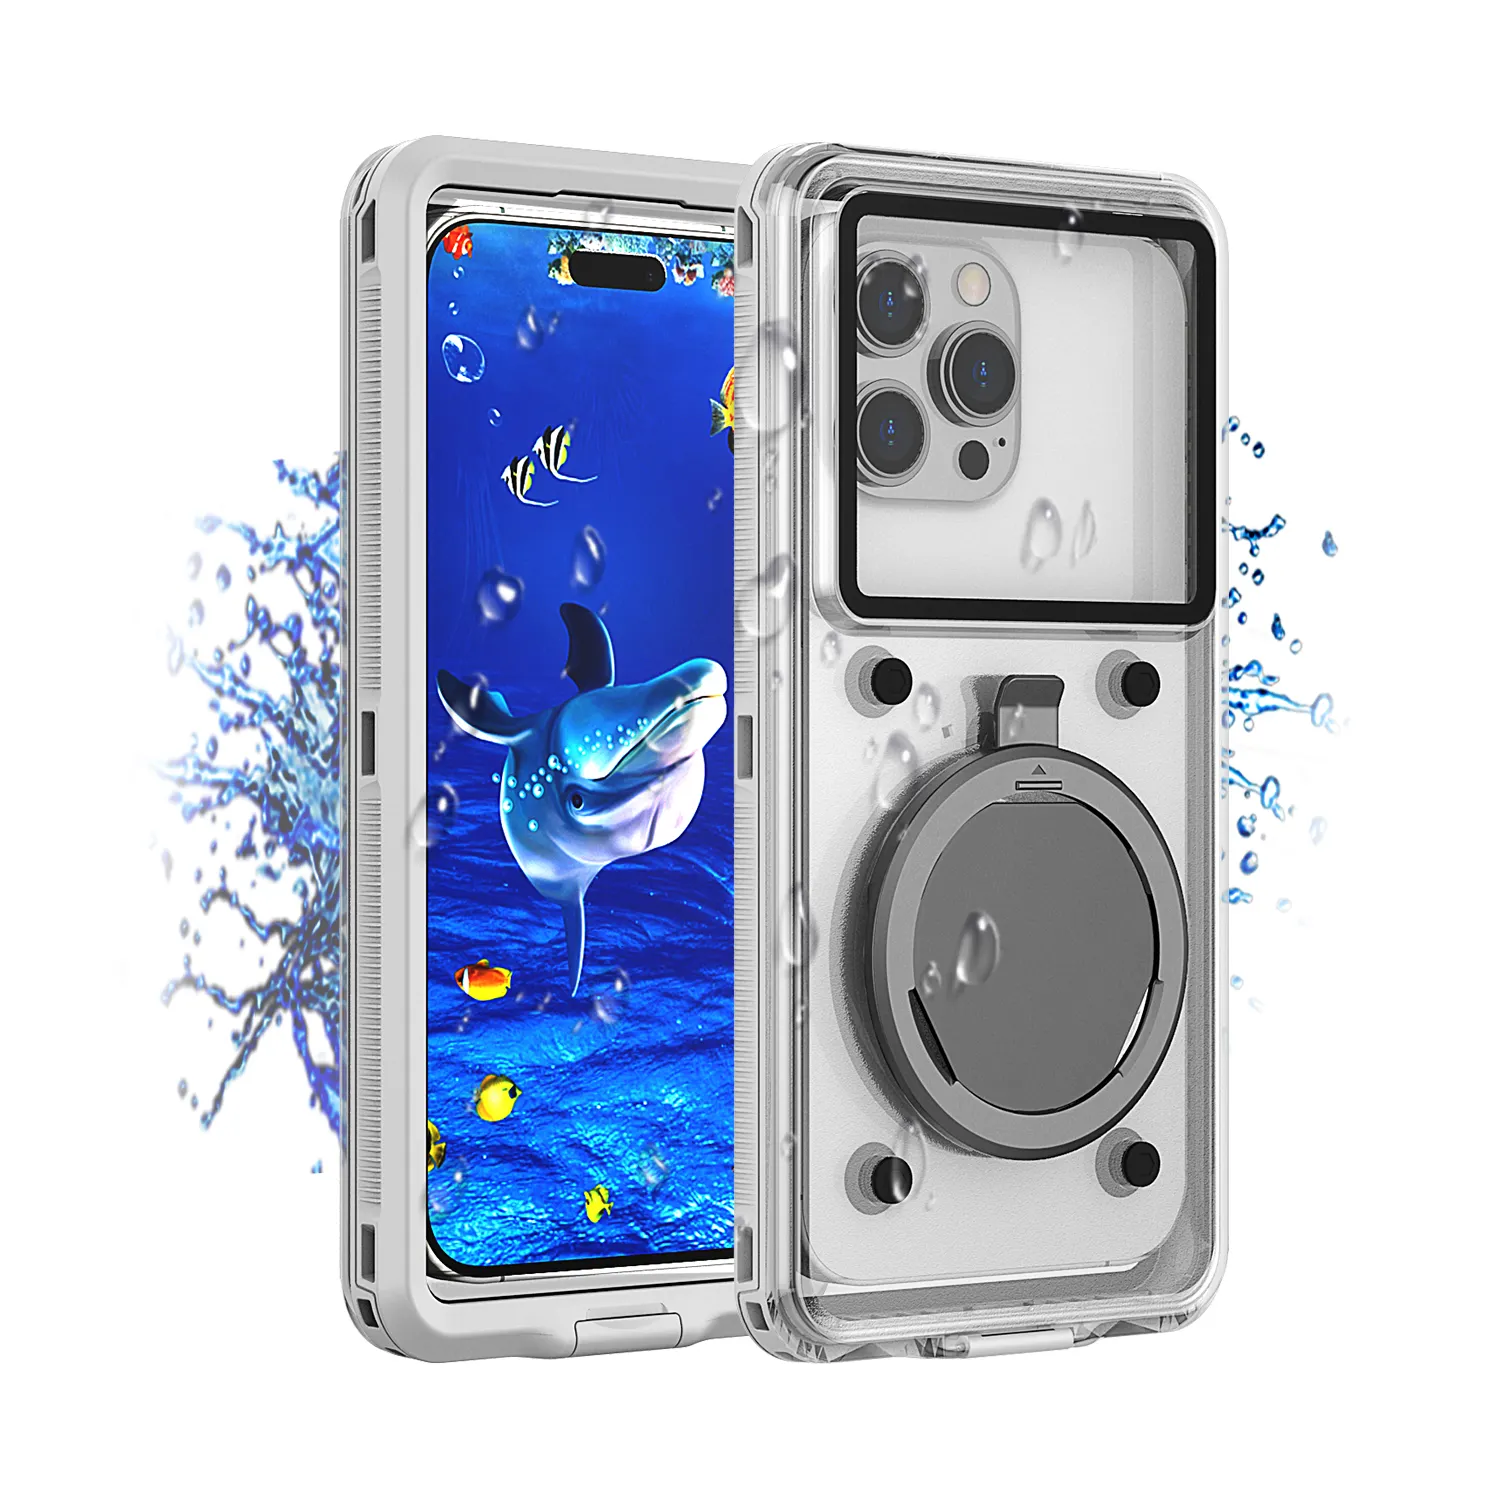 6.9インチ以内hユニバーサル防水携帯電話ケース密閉型水中セルスイミングポーチカバー濡れ性タッチ電話ケース